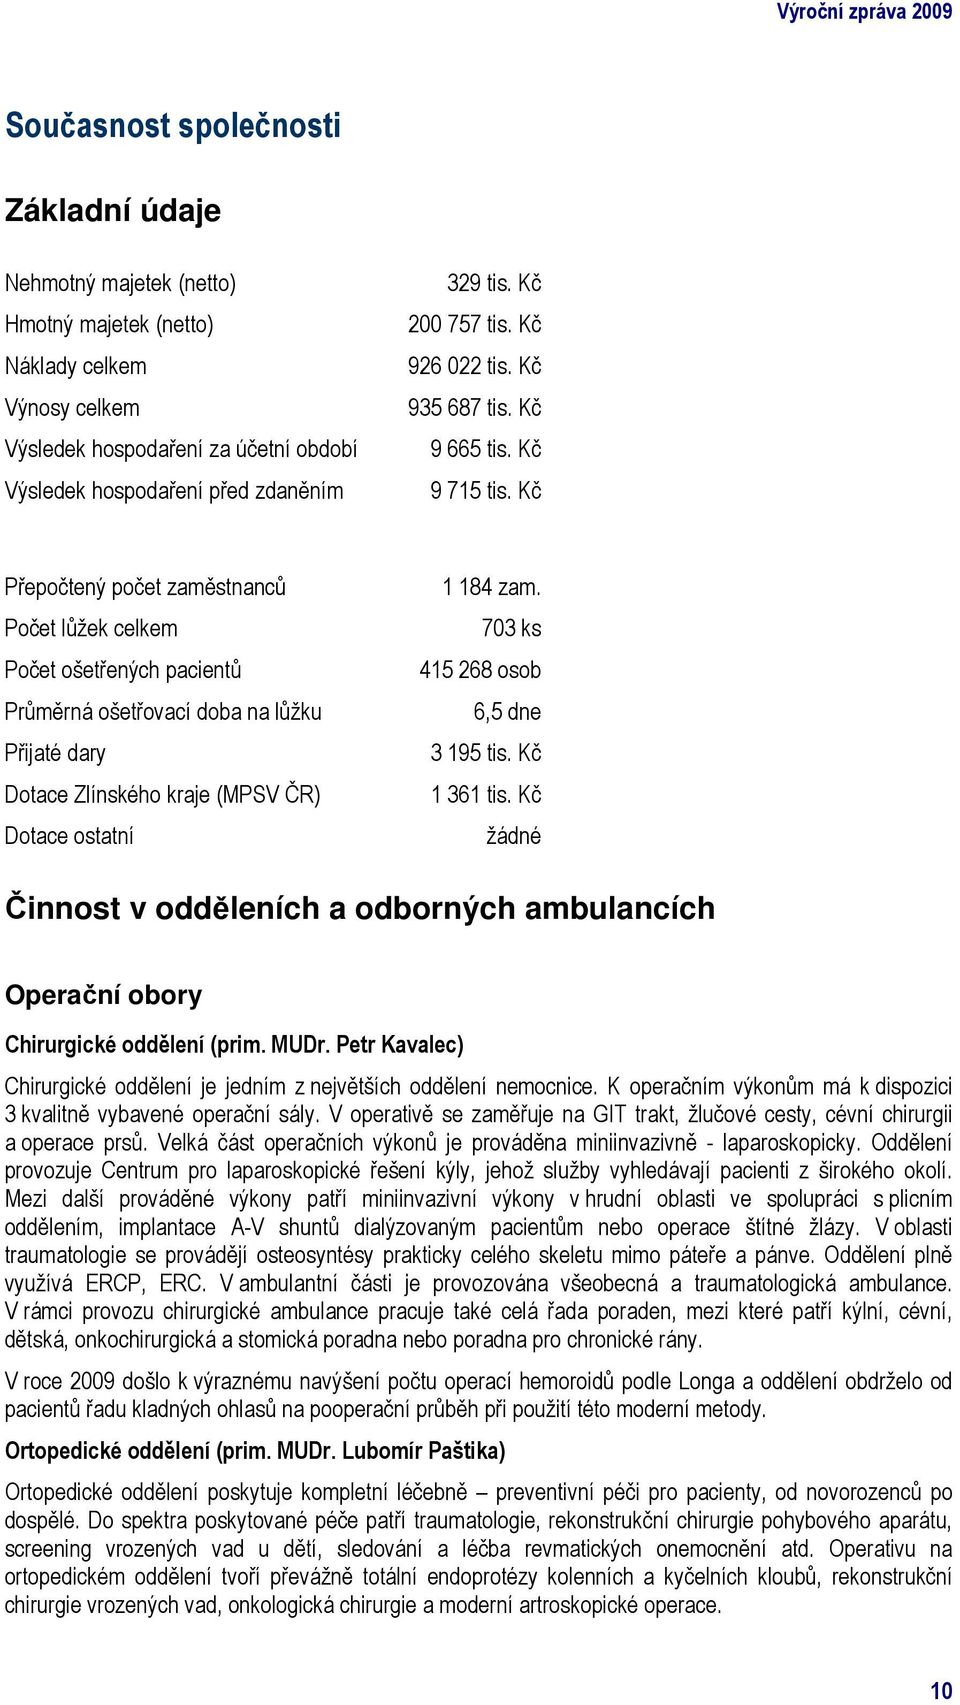 Kč Přepočtený počet zaměstnanců Počet lůžek celkem Počet ošetřených pacientů Průměrná ošetřovací doba na lůžku Přijaté dary Dotace Zlínského kraje (MPSV ČR) Dotace ostatní 1 184 zam.